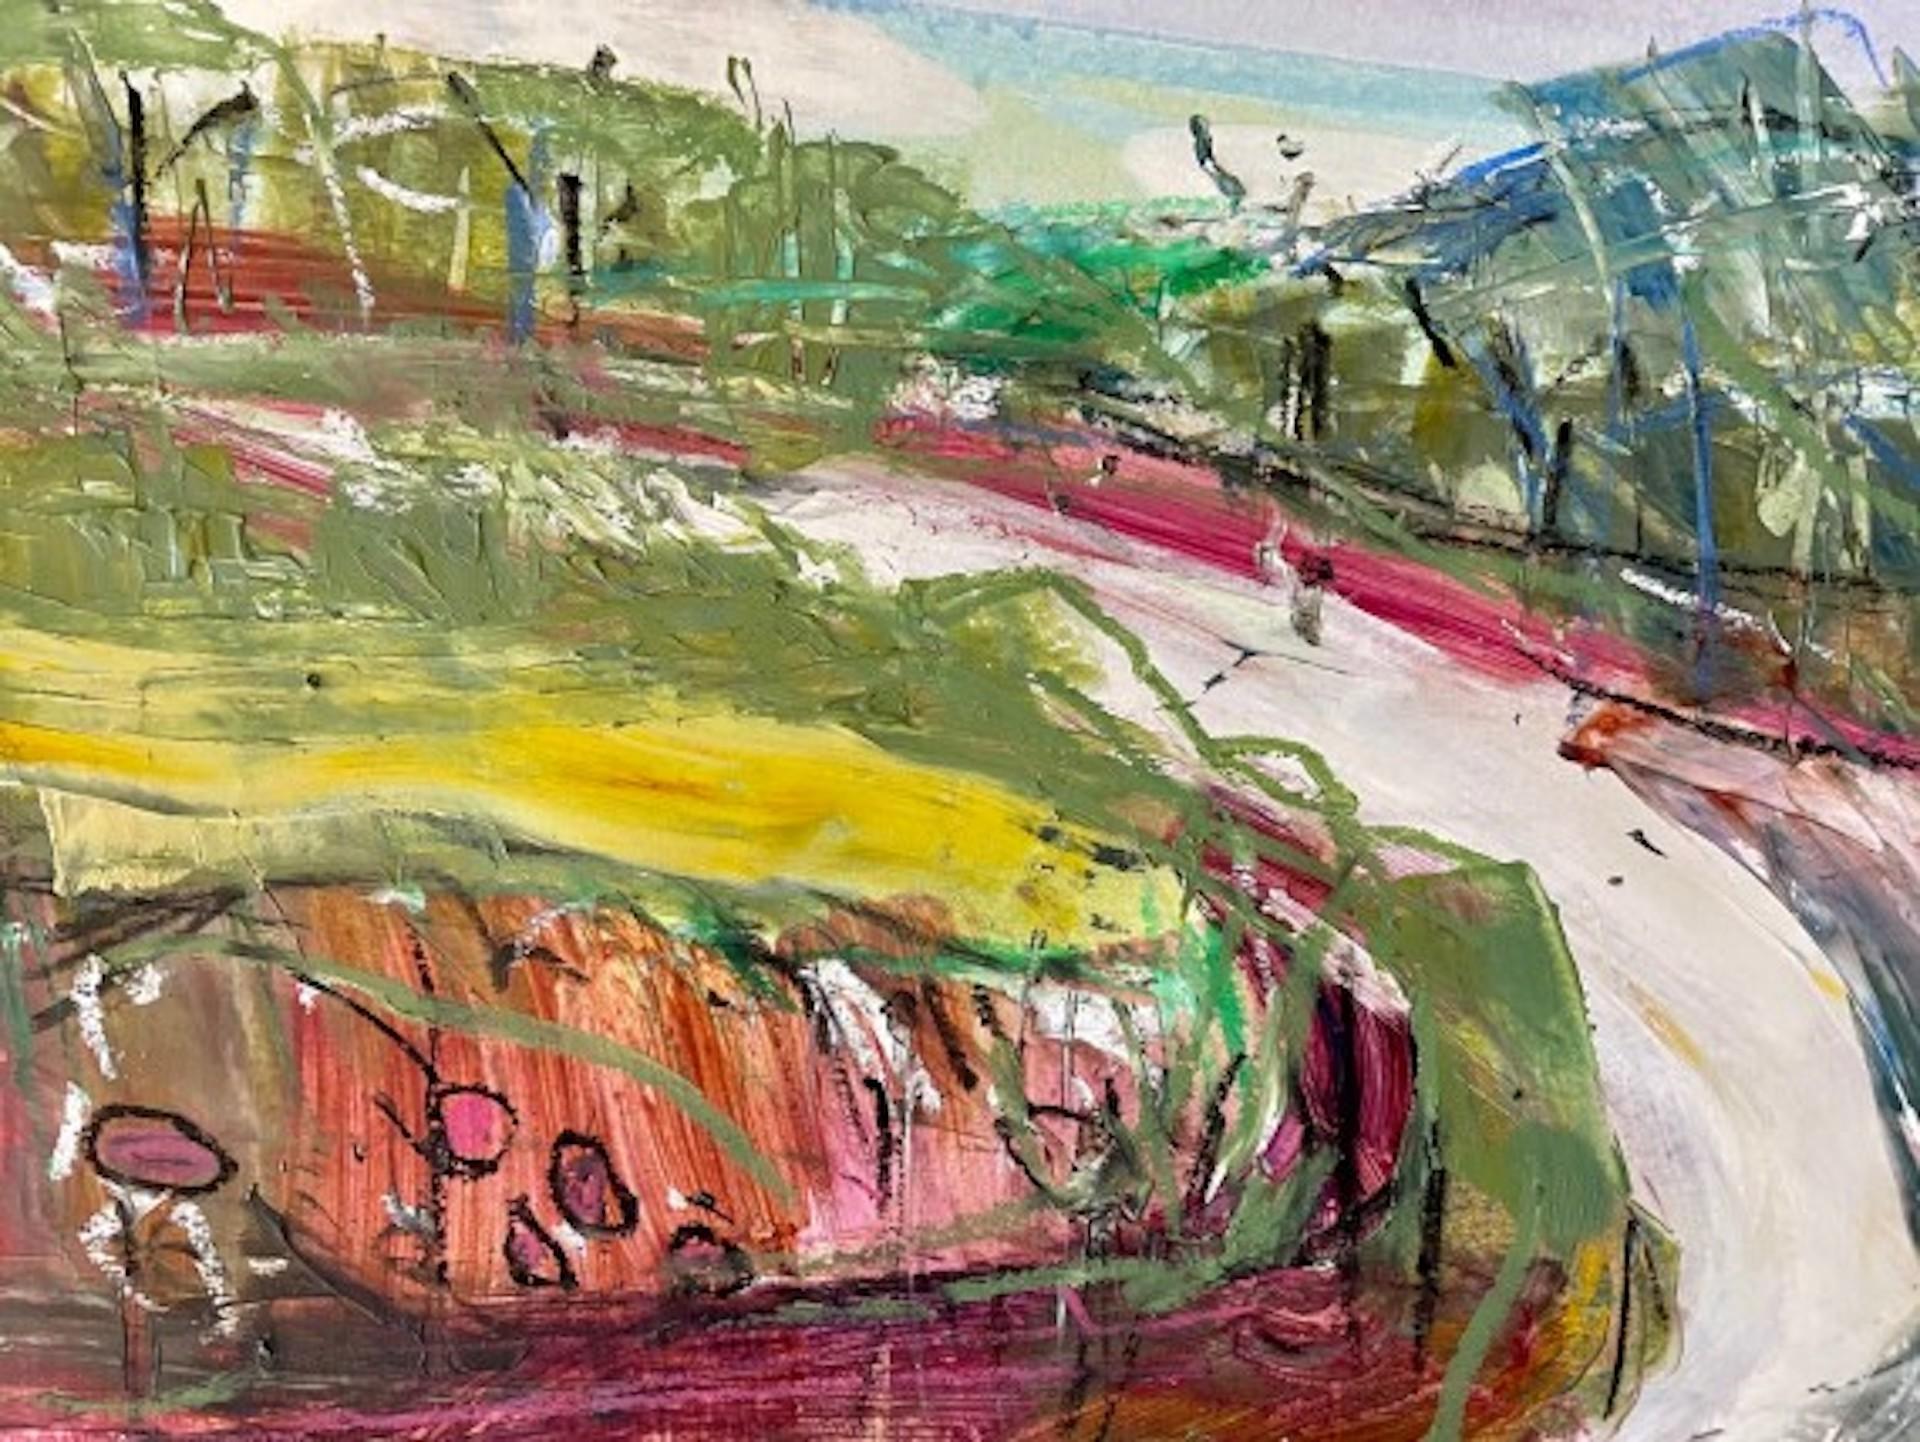 Landscape Painting Natalie Bird - Natalie Oiseau, Country Lane II, peinture abstraite originale de paysage en techniques mixtes